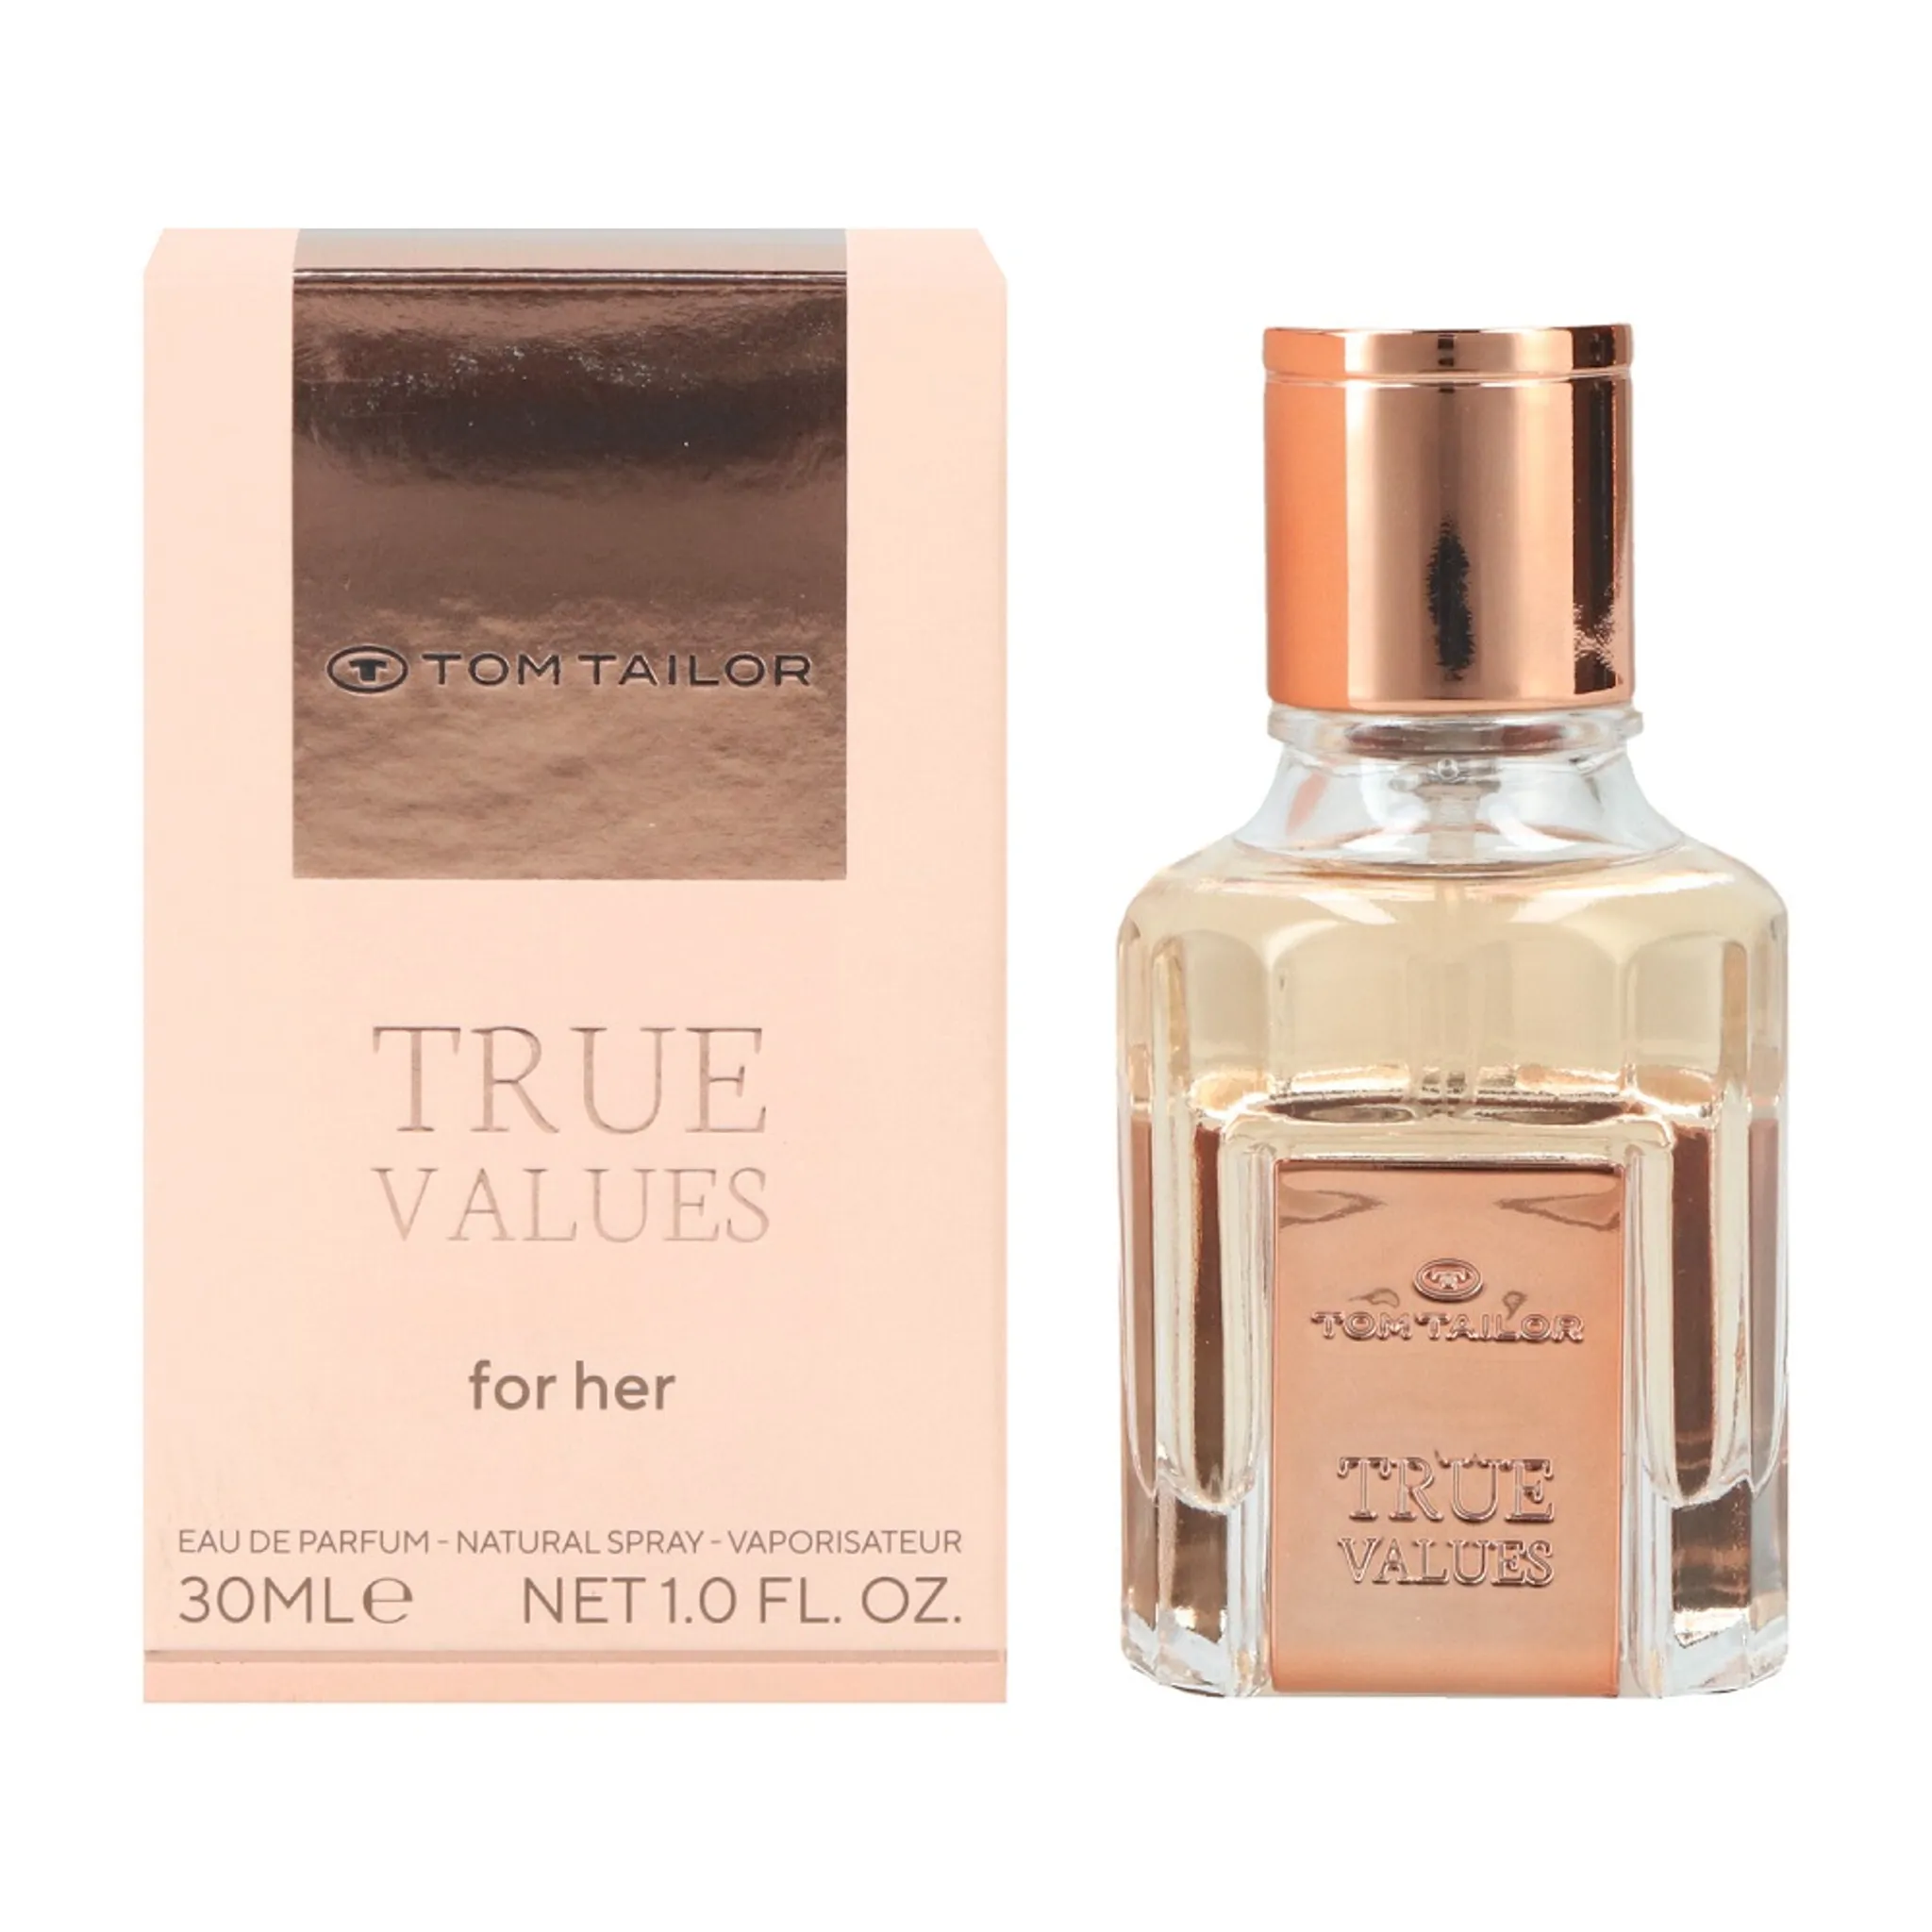 Tom Tailor True Values for Her Eau de Parfum